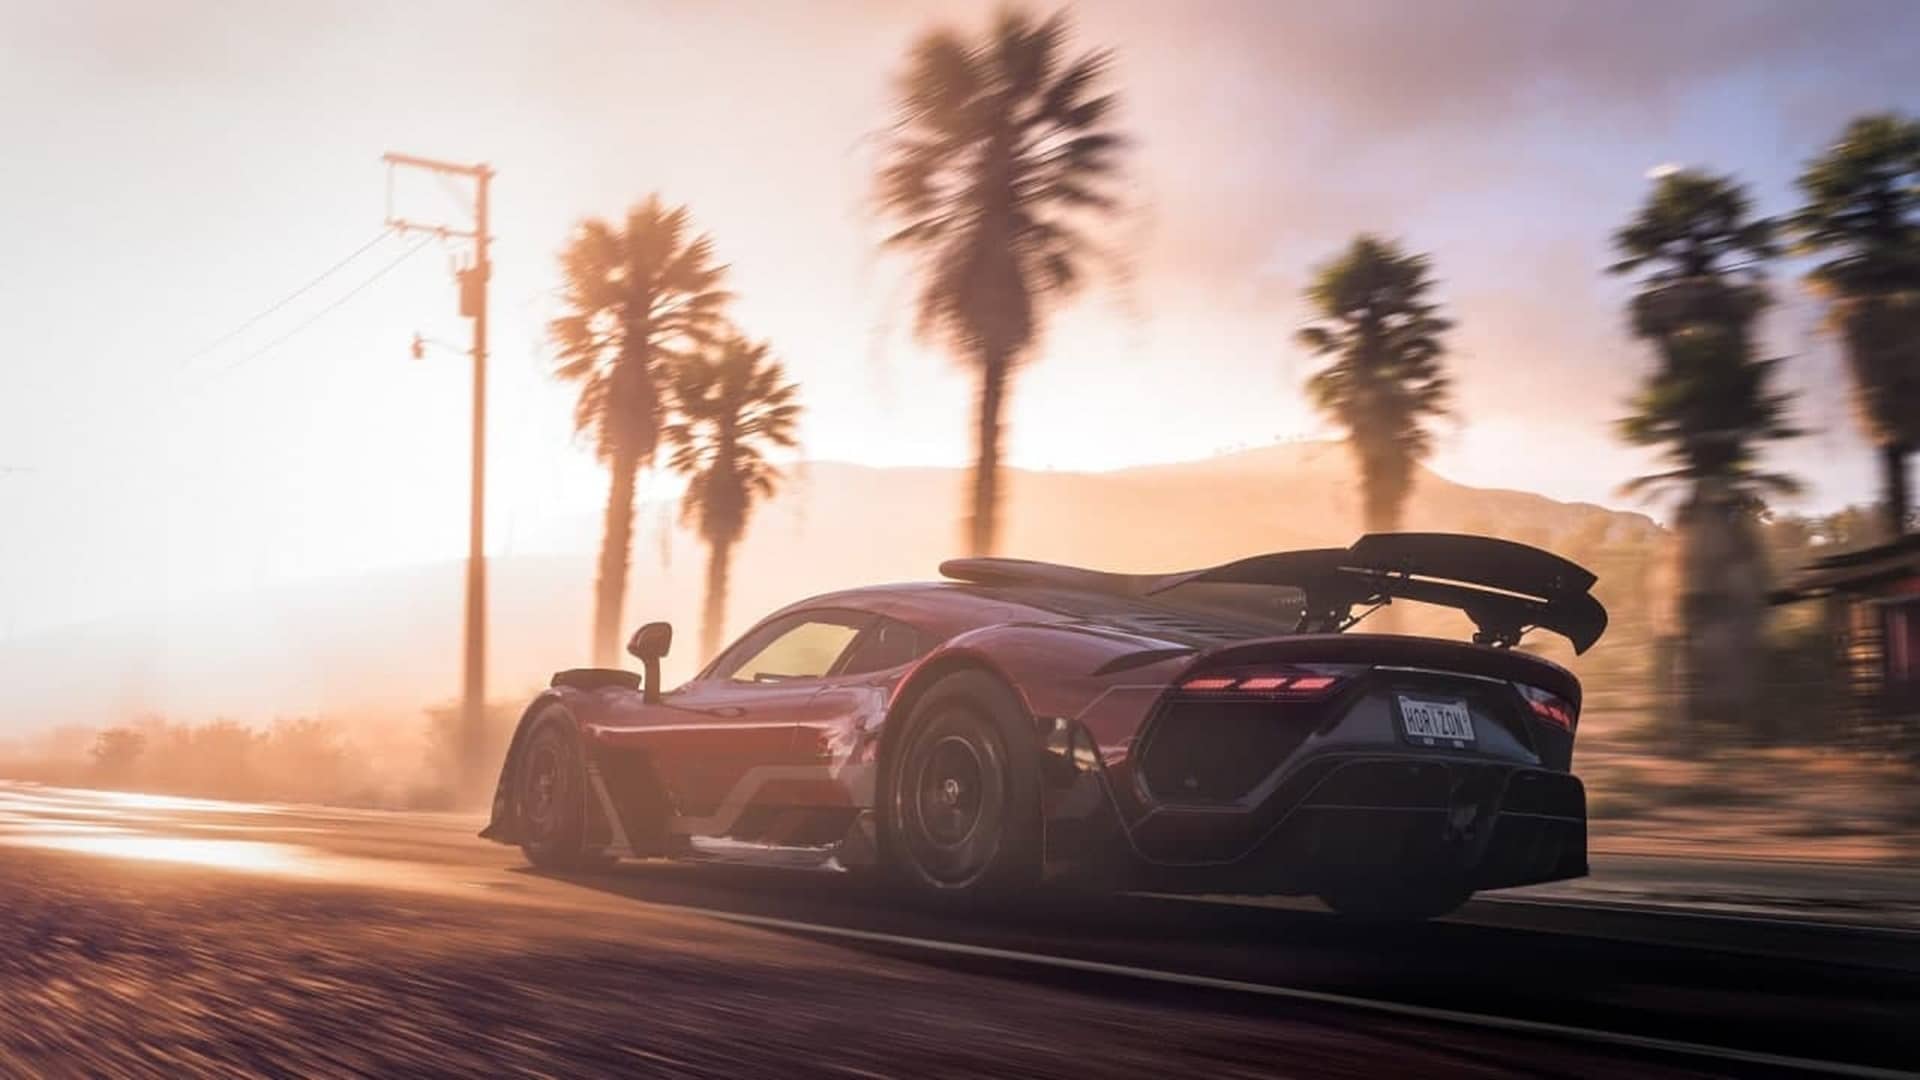 Forza Horizon 5 recibirá un DLC de Hot Wheels que fue filtrado a través de Steam, GamersRD